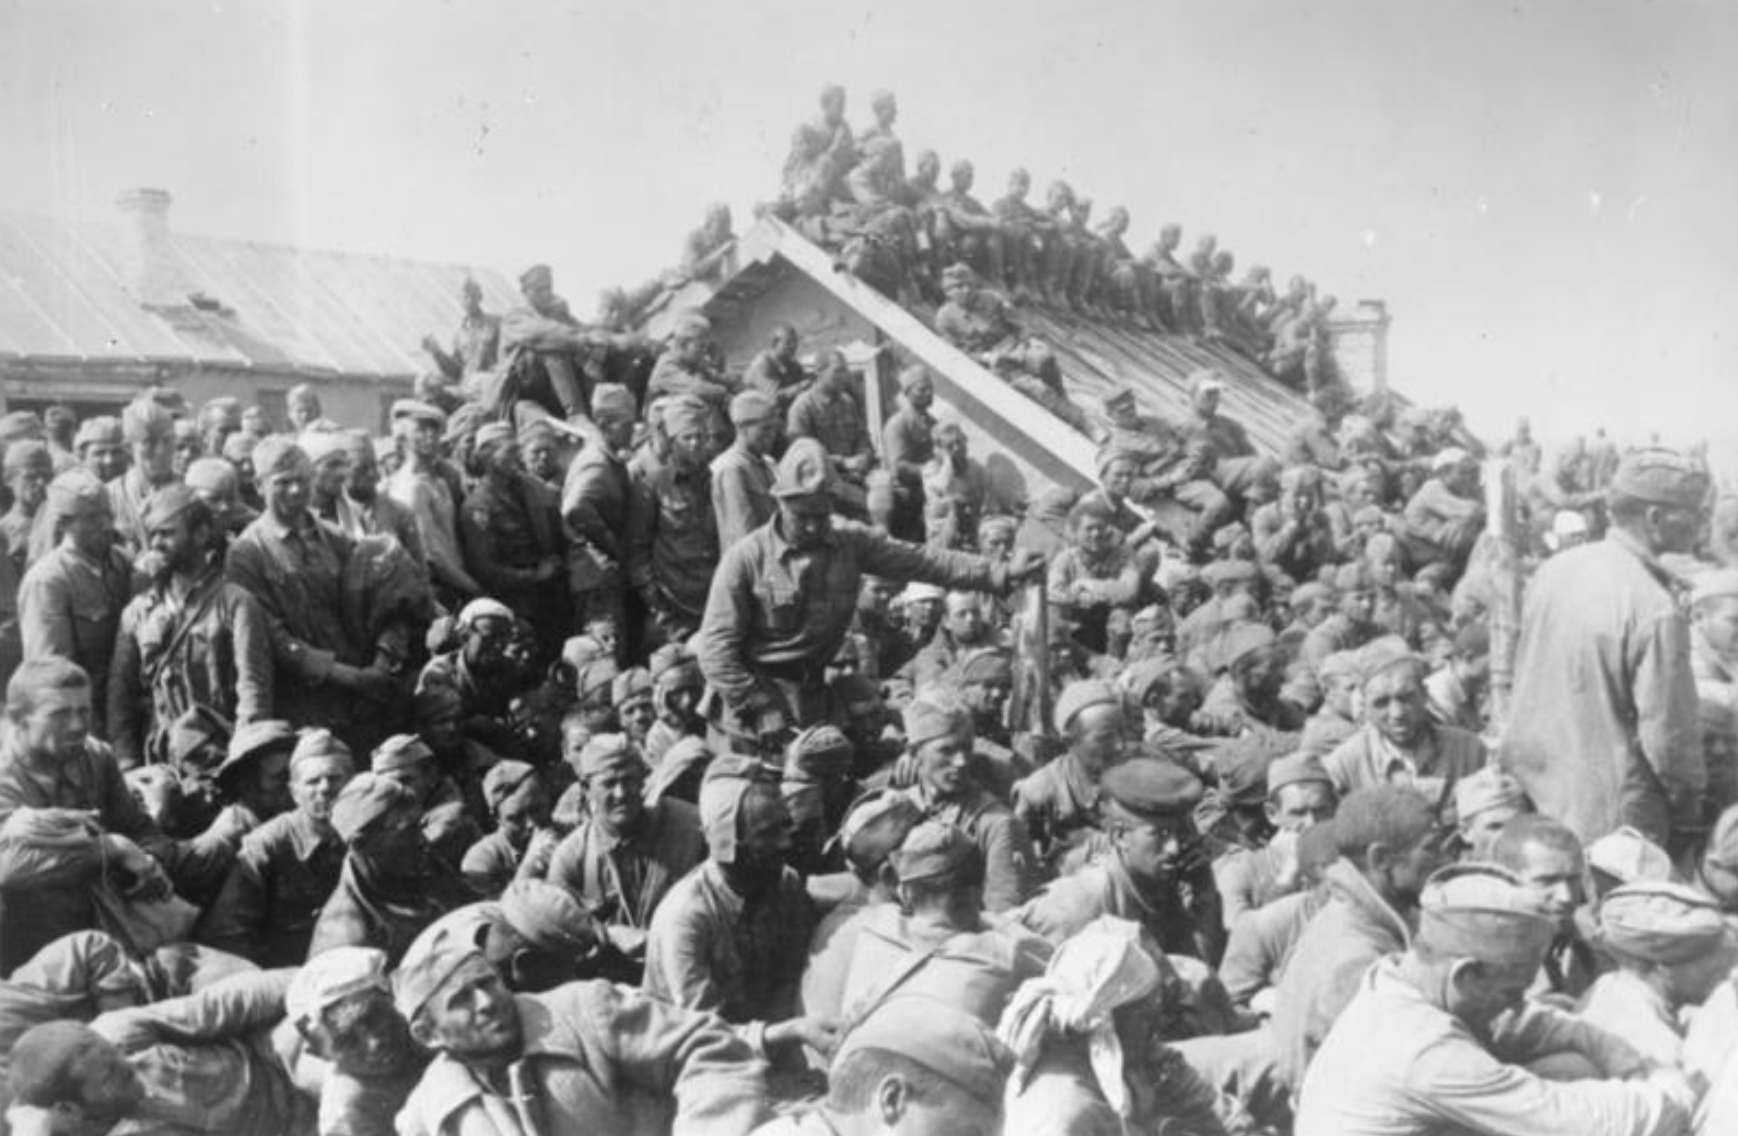 Image d'illustration. Camp de transit surpeuplé près de Smolensk, Russie, en août 1941